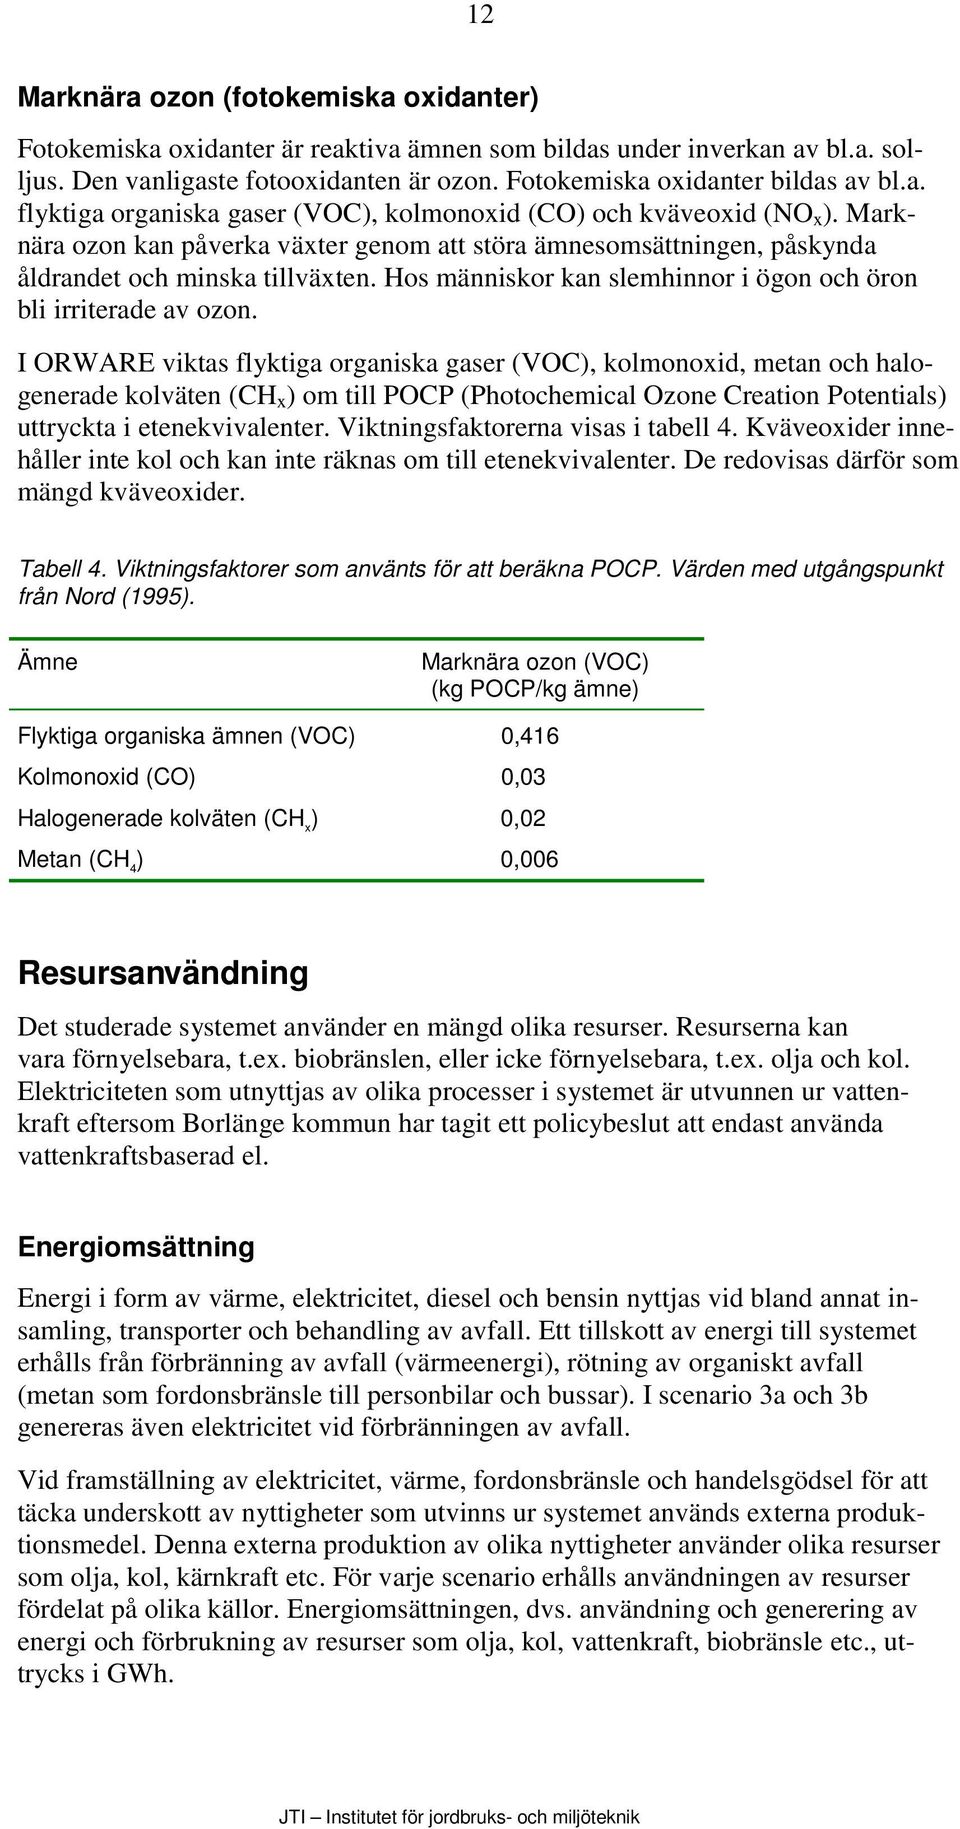 Systemanalys av avfallshanteringen i kommunerna Falun och Borlänge ...